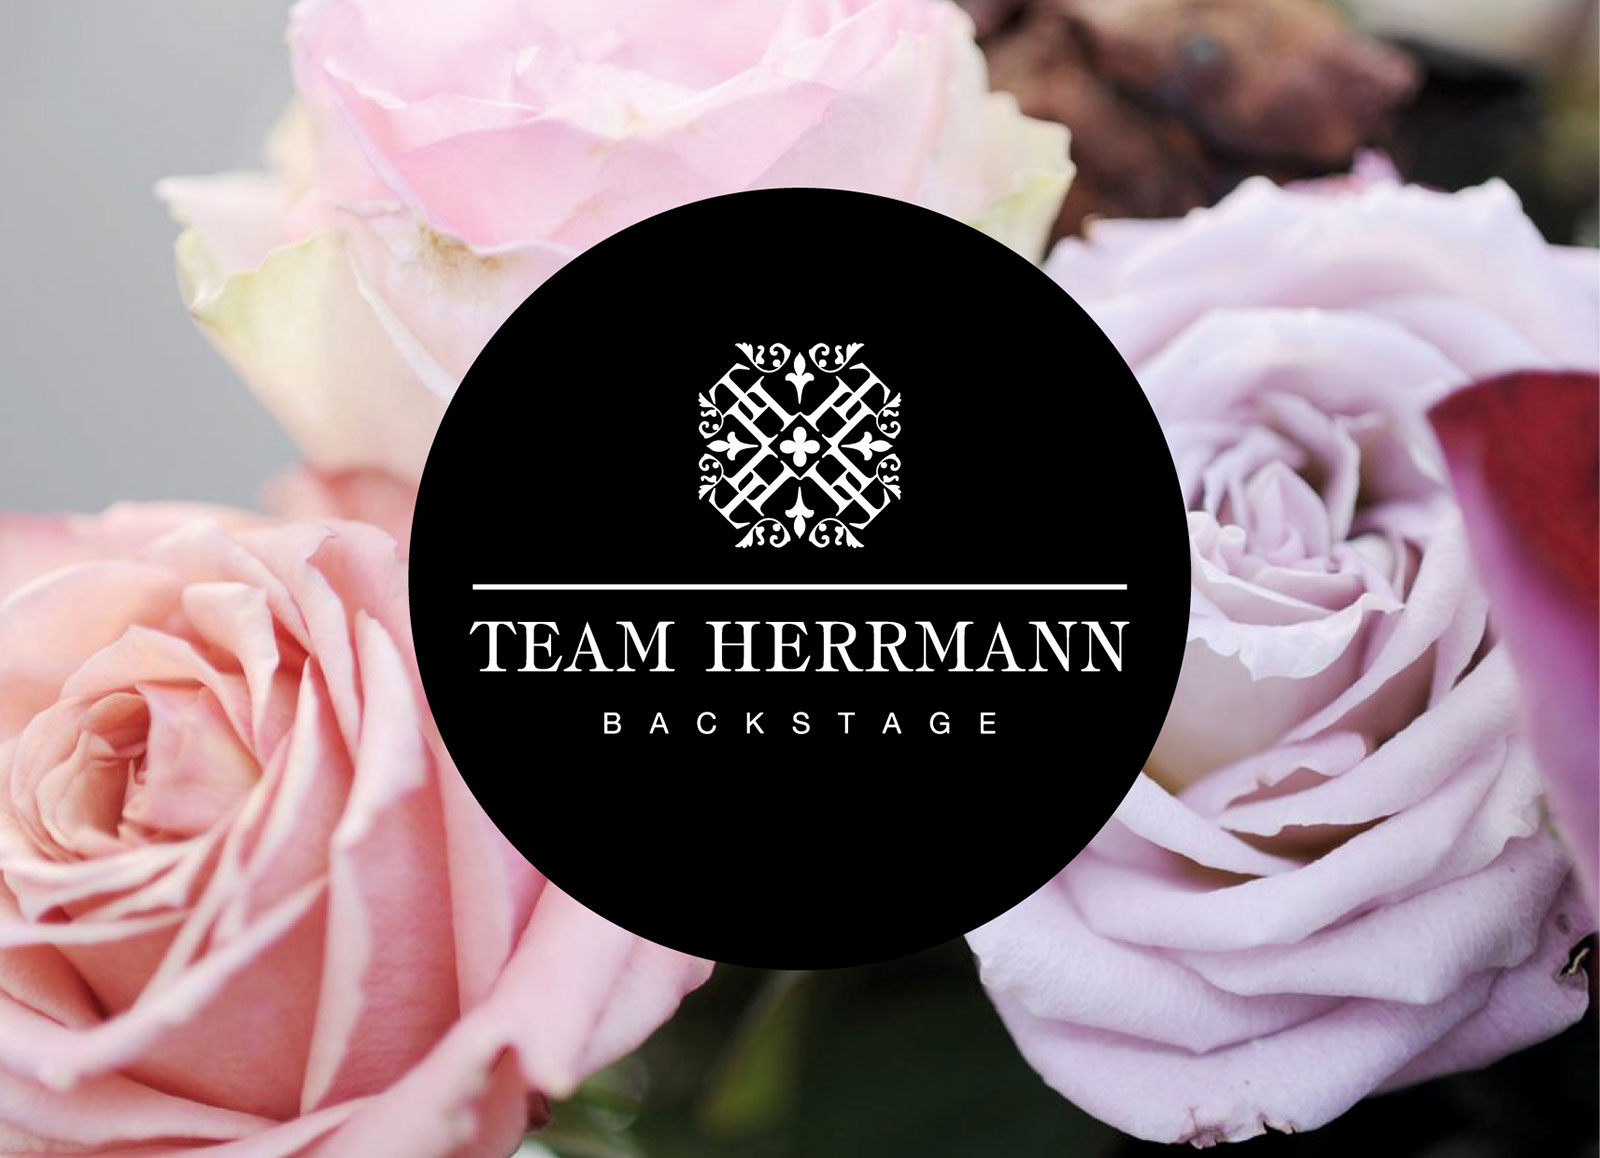 Team Herrmann Backstage